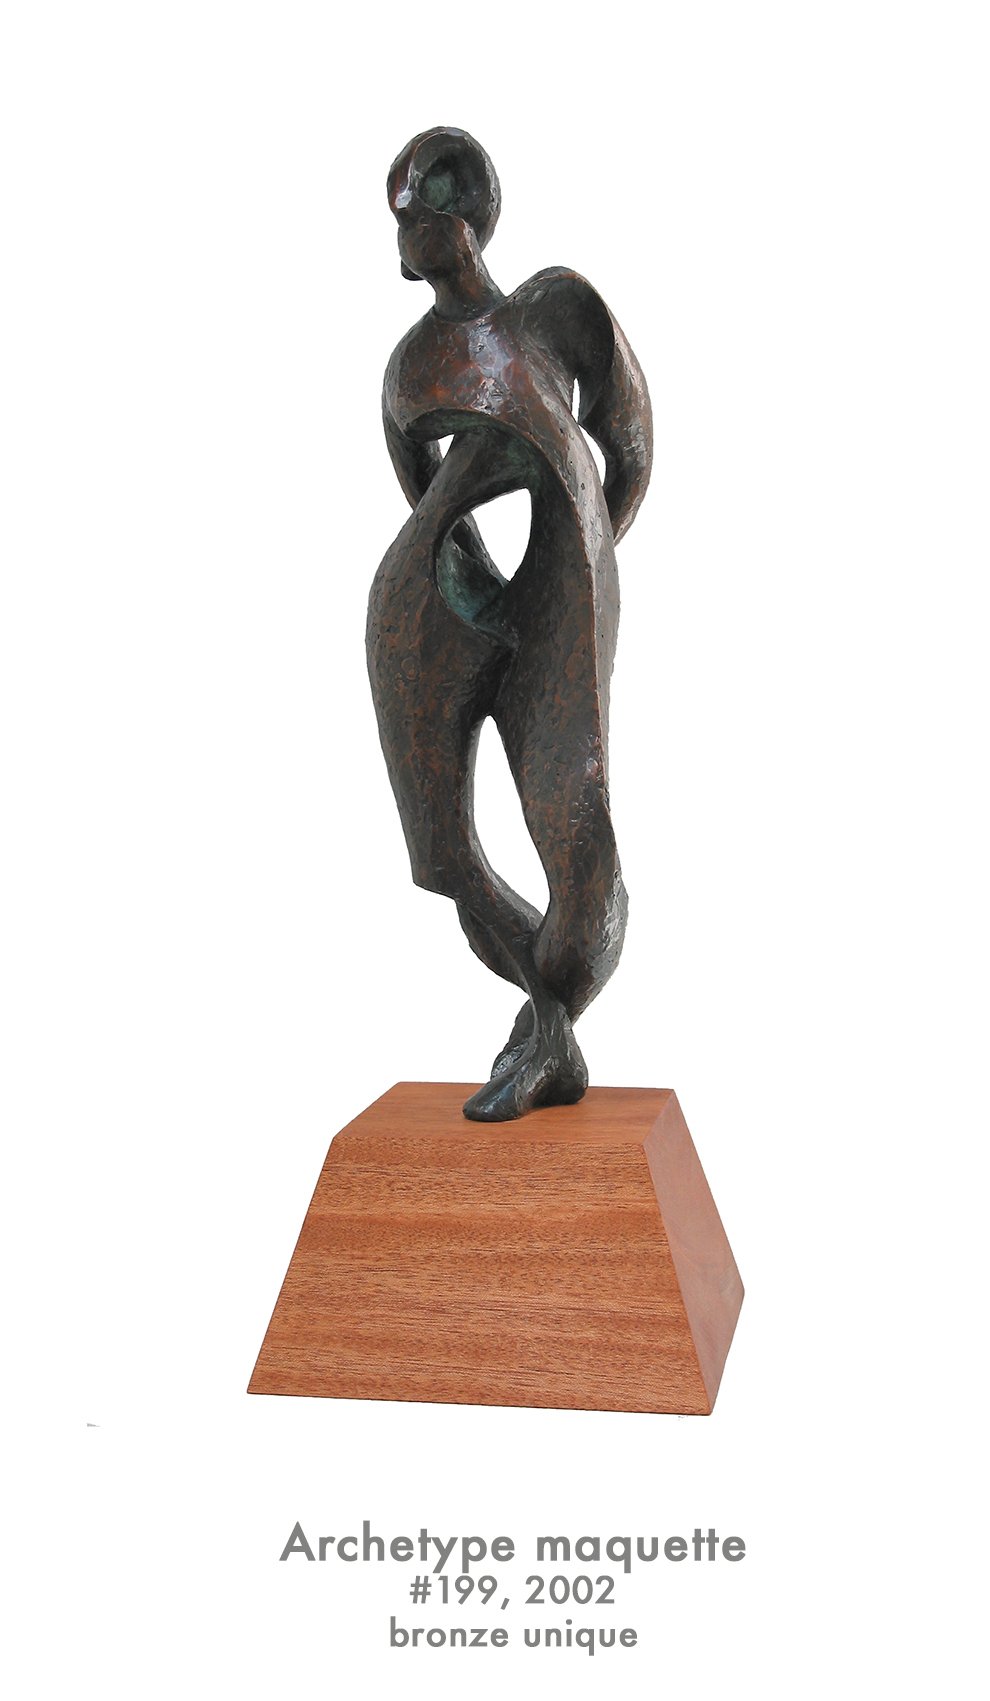 Archetype maquette, 2002, bronze, #199